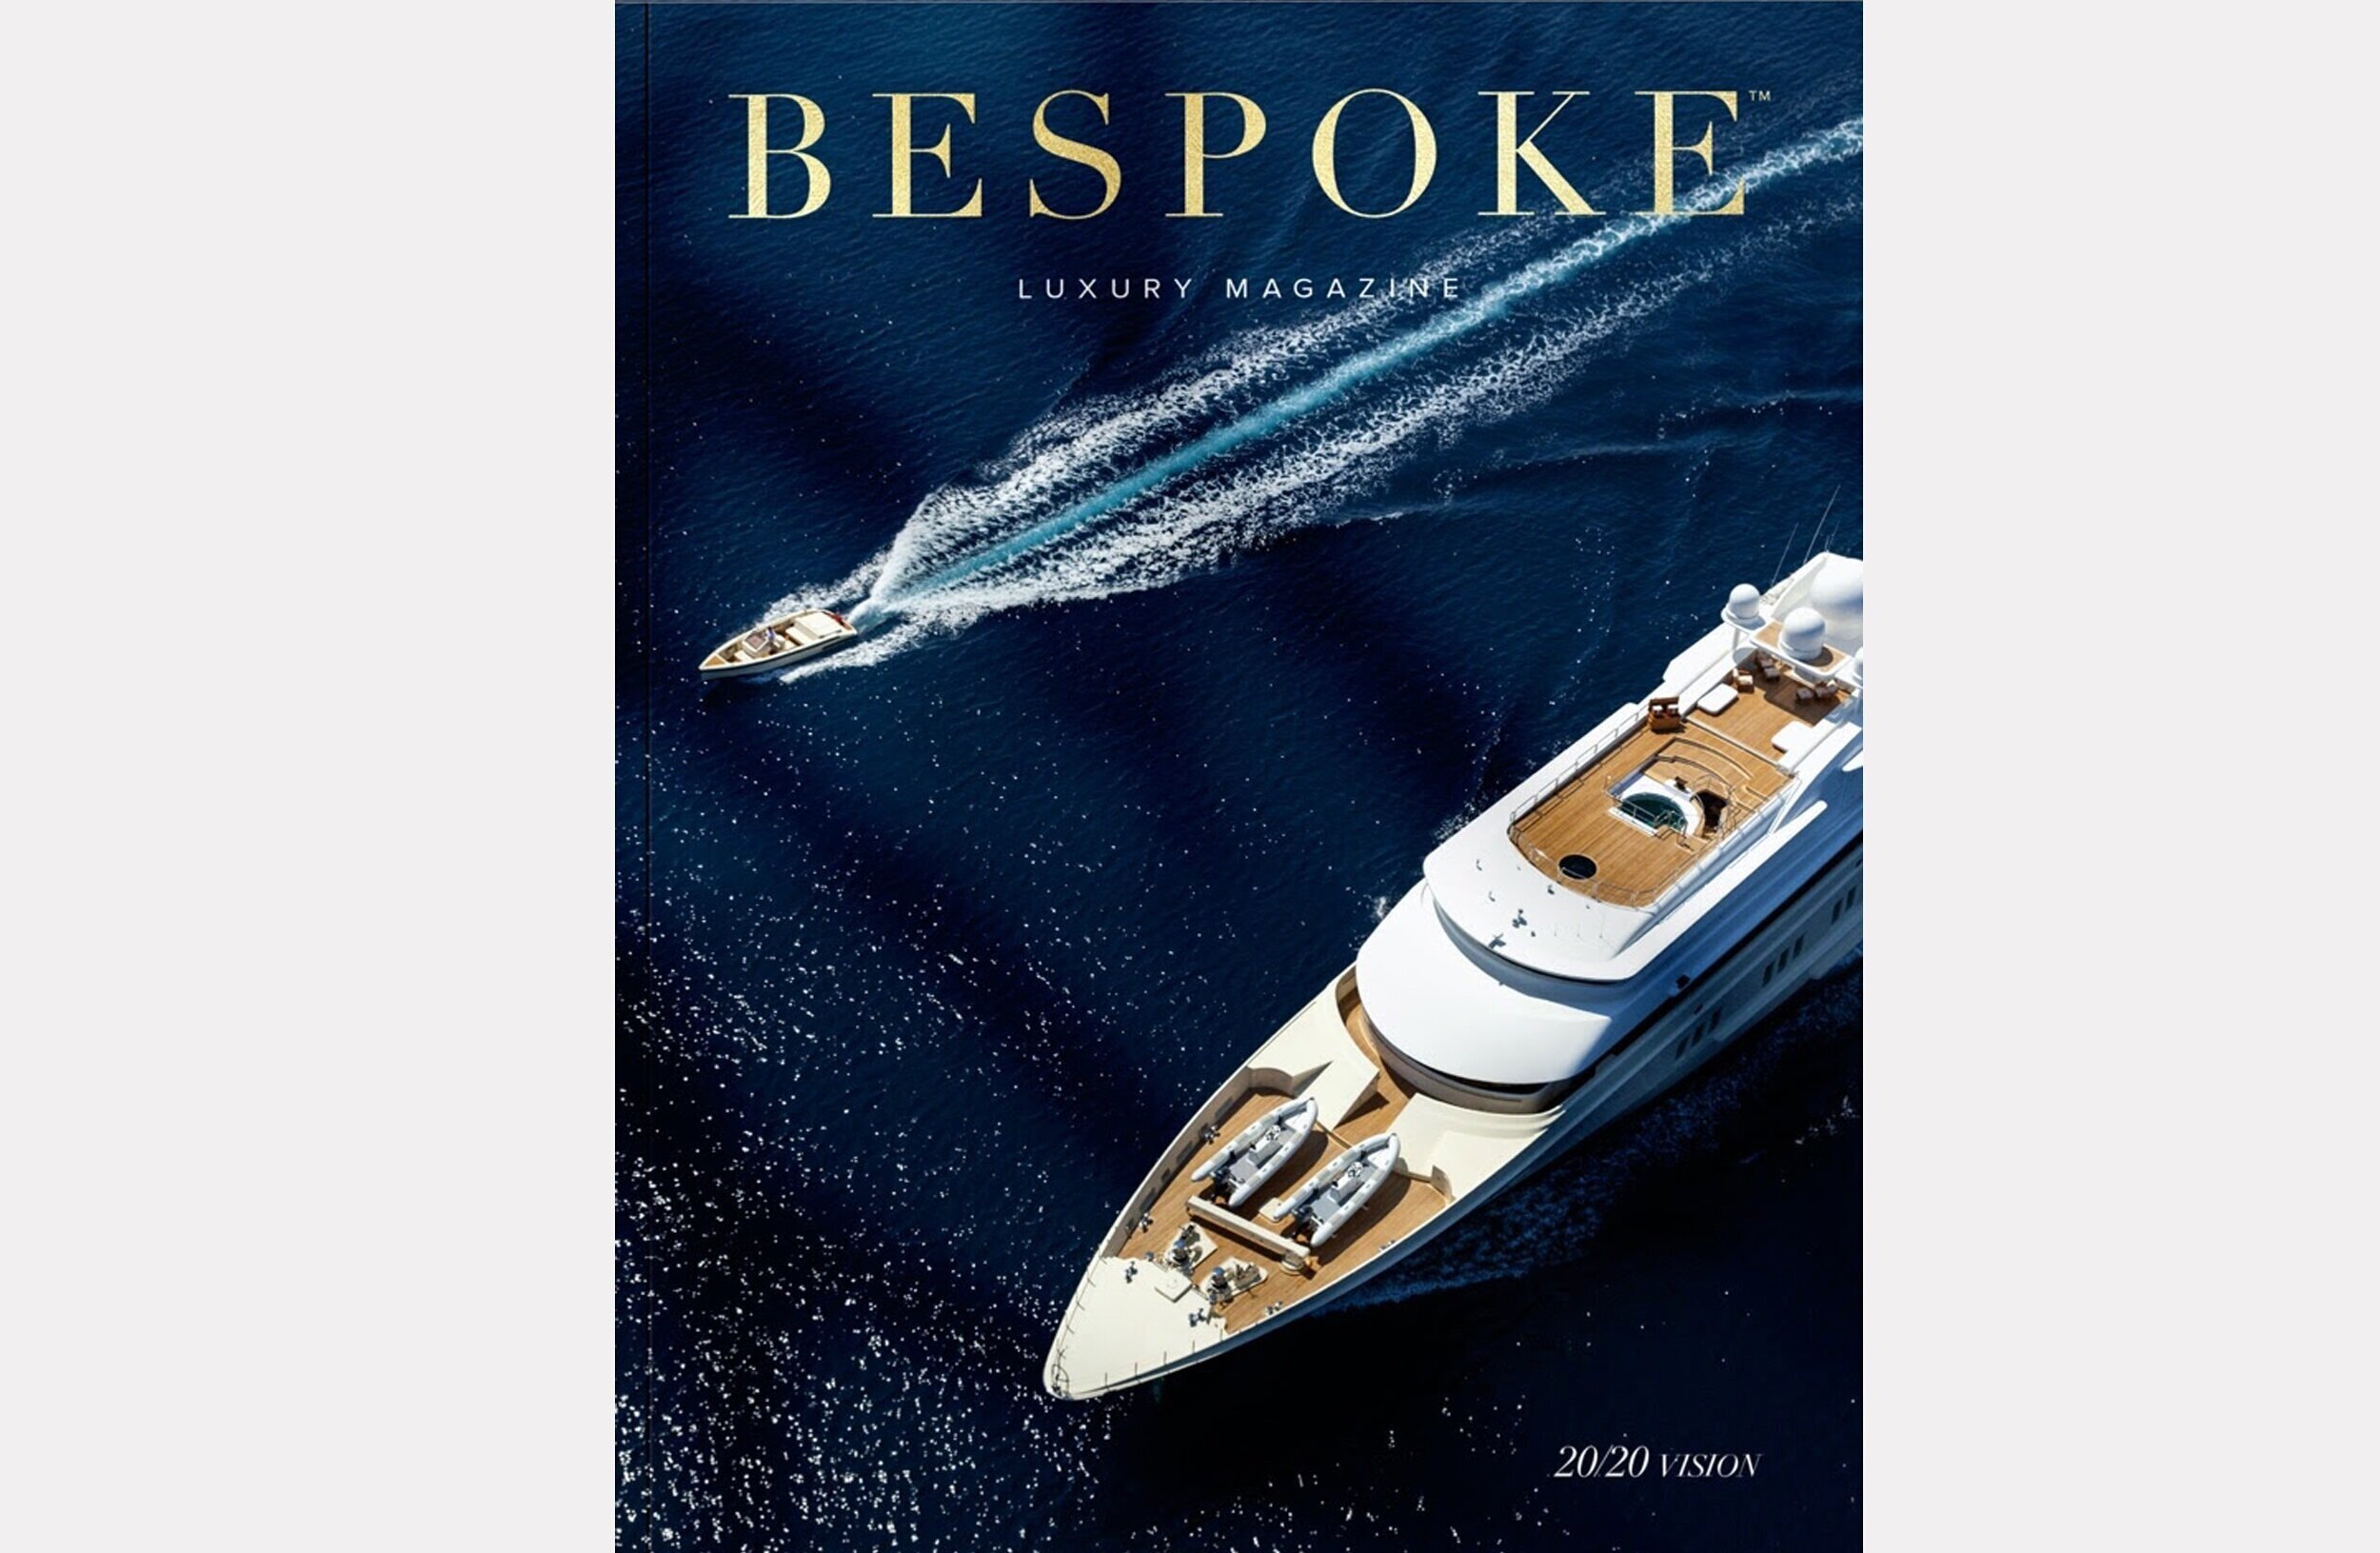 Bespoke Luxury Magazine